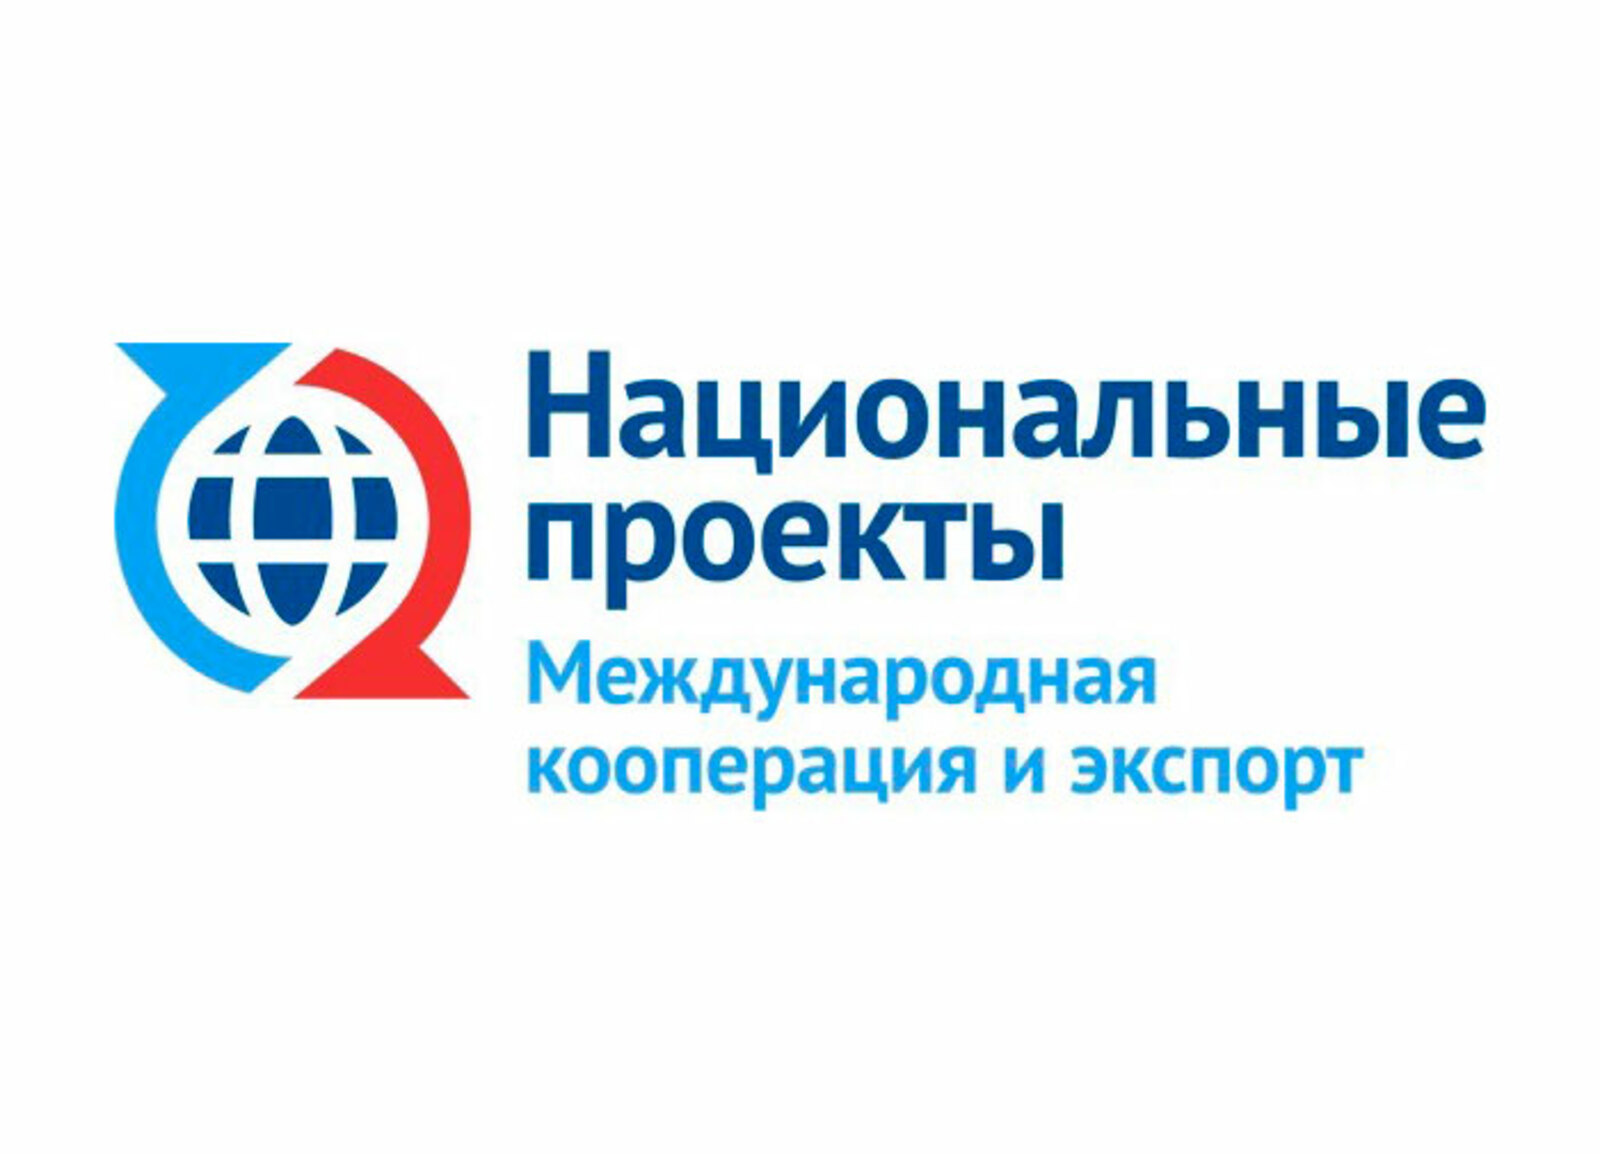 Товары из Башкирии появятся на международных маркетплейсах